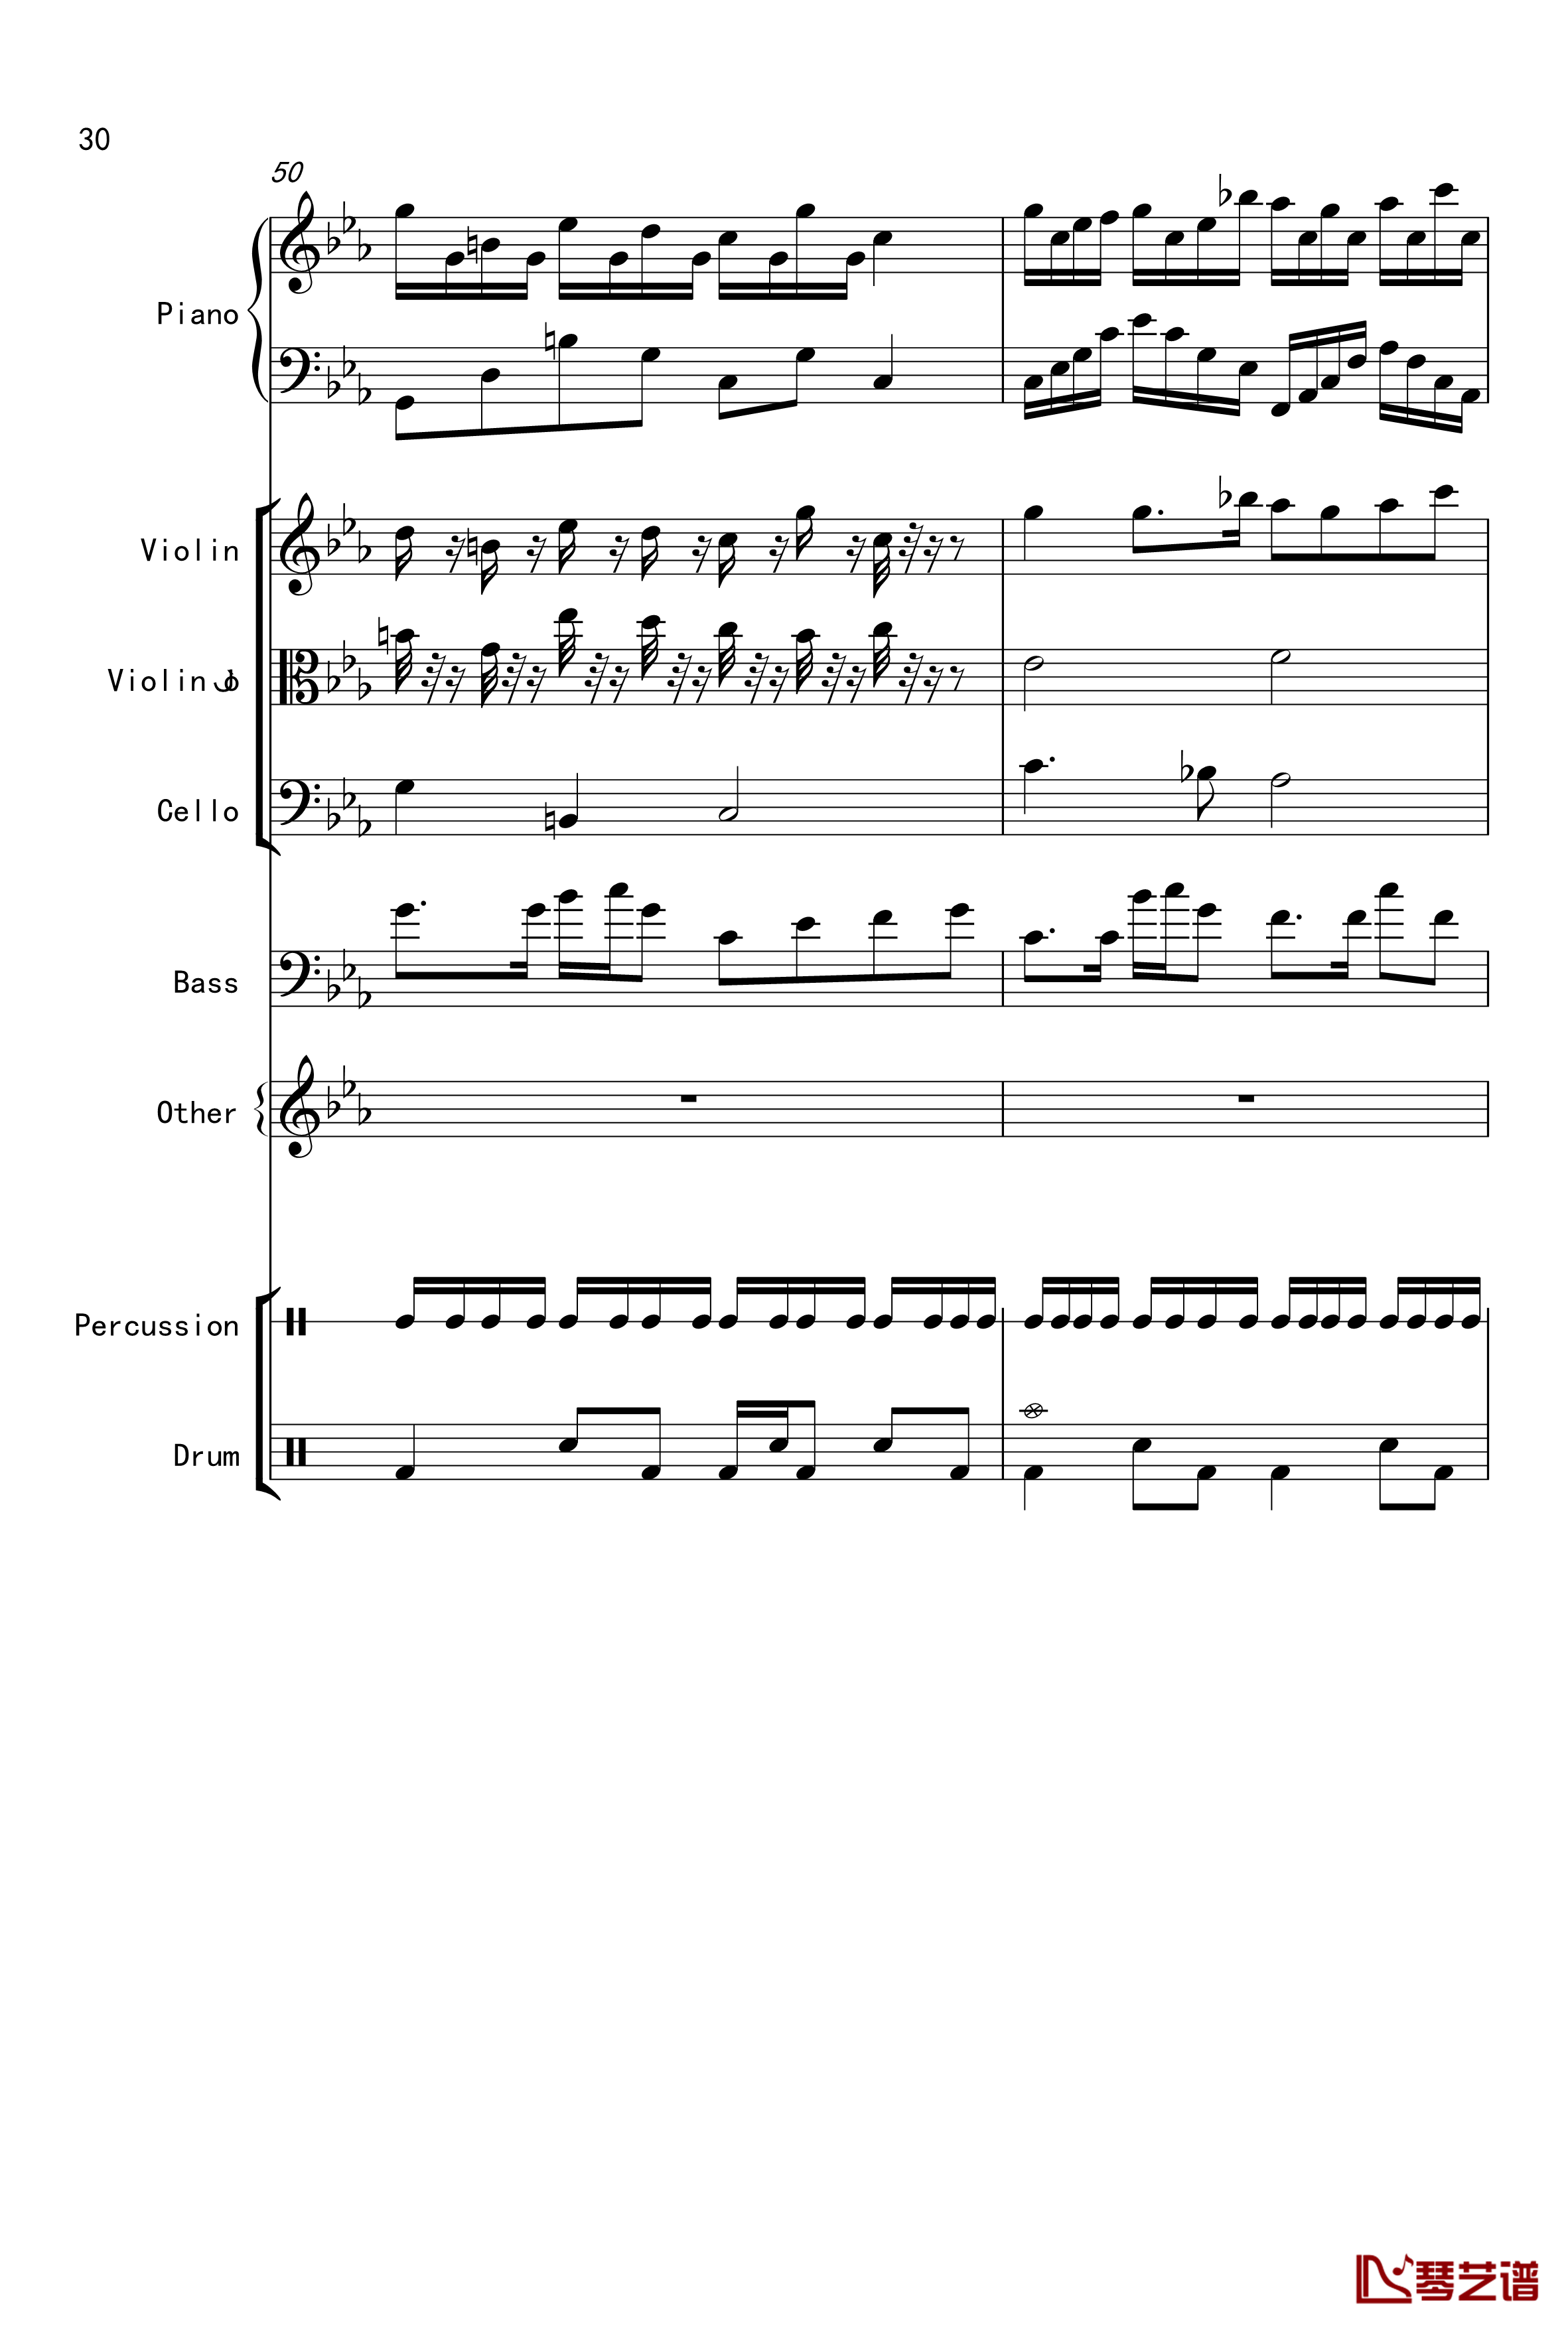 克罗地亚舞曲钢琴谱-Croatian Rhapsody-马克西姆-Maksim·Mrvica30